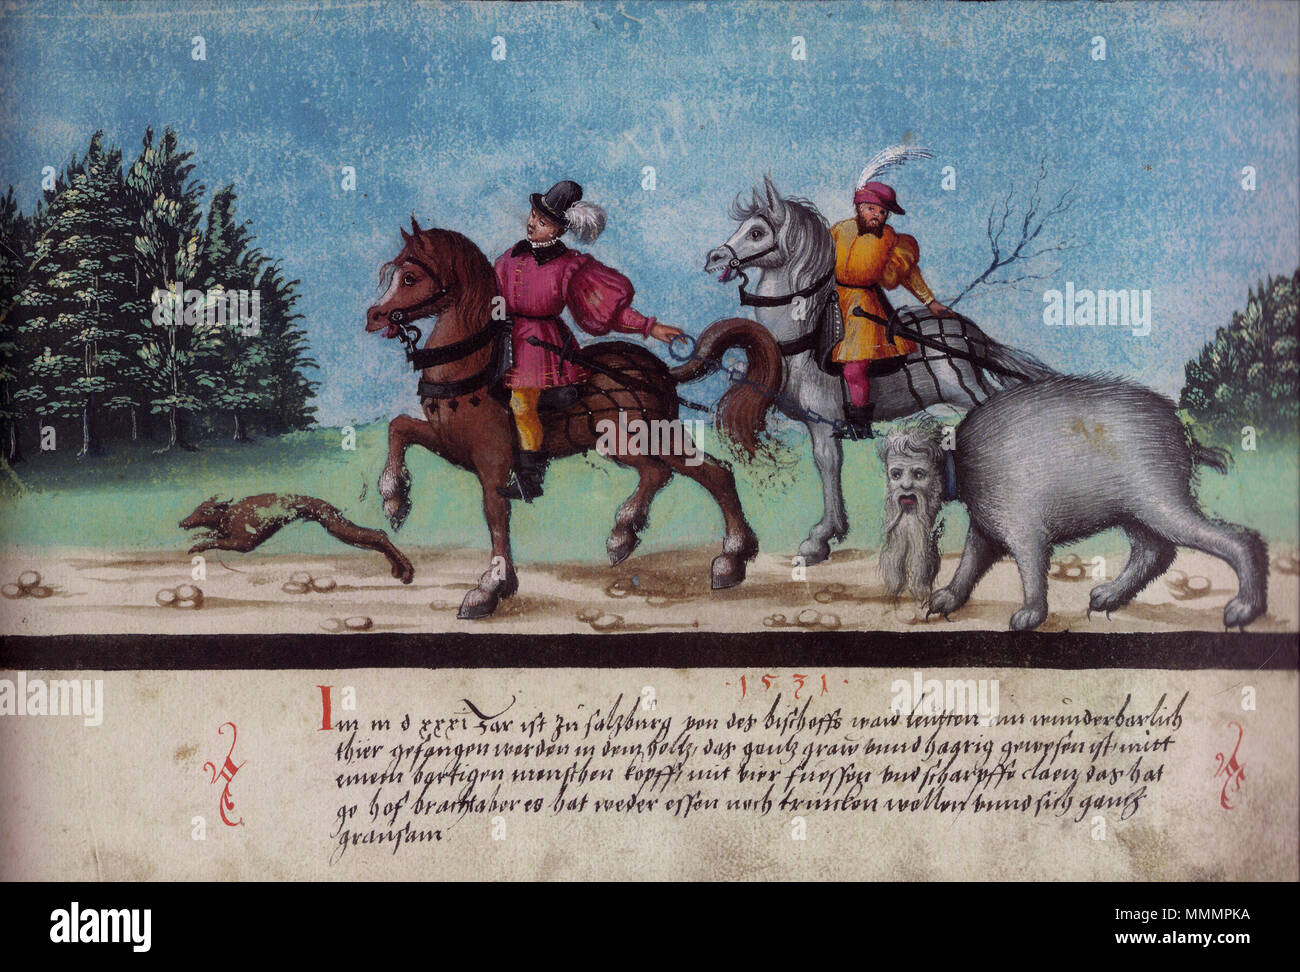 Augsburger Wunderzeichenbuch — Folio 123  „Monster bei Salzburg festgenommen worden“ Stock Photo